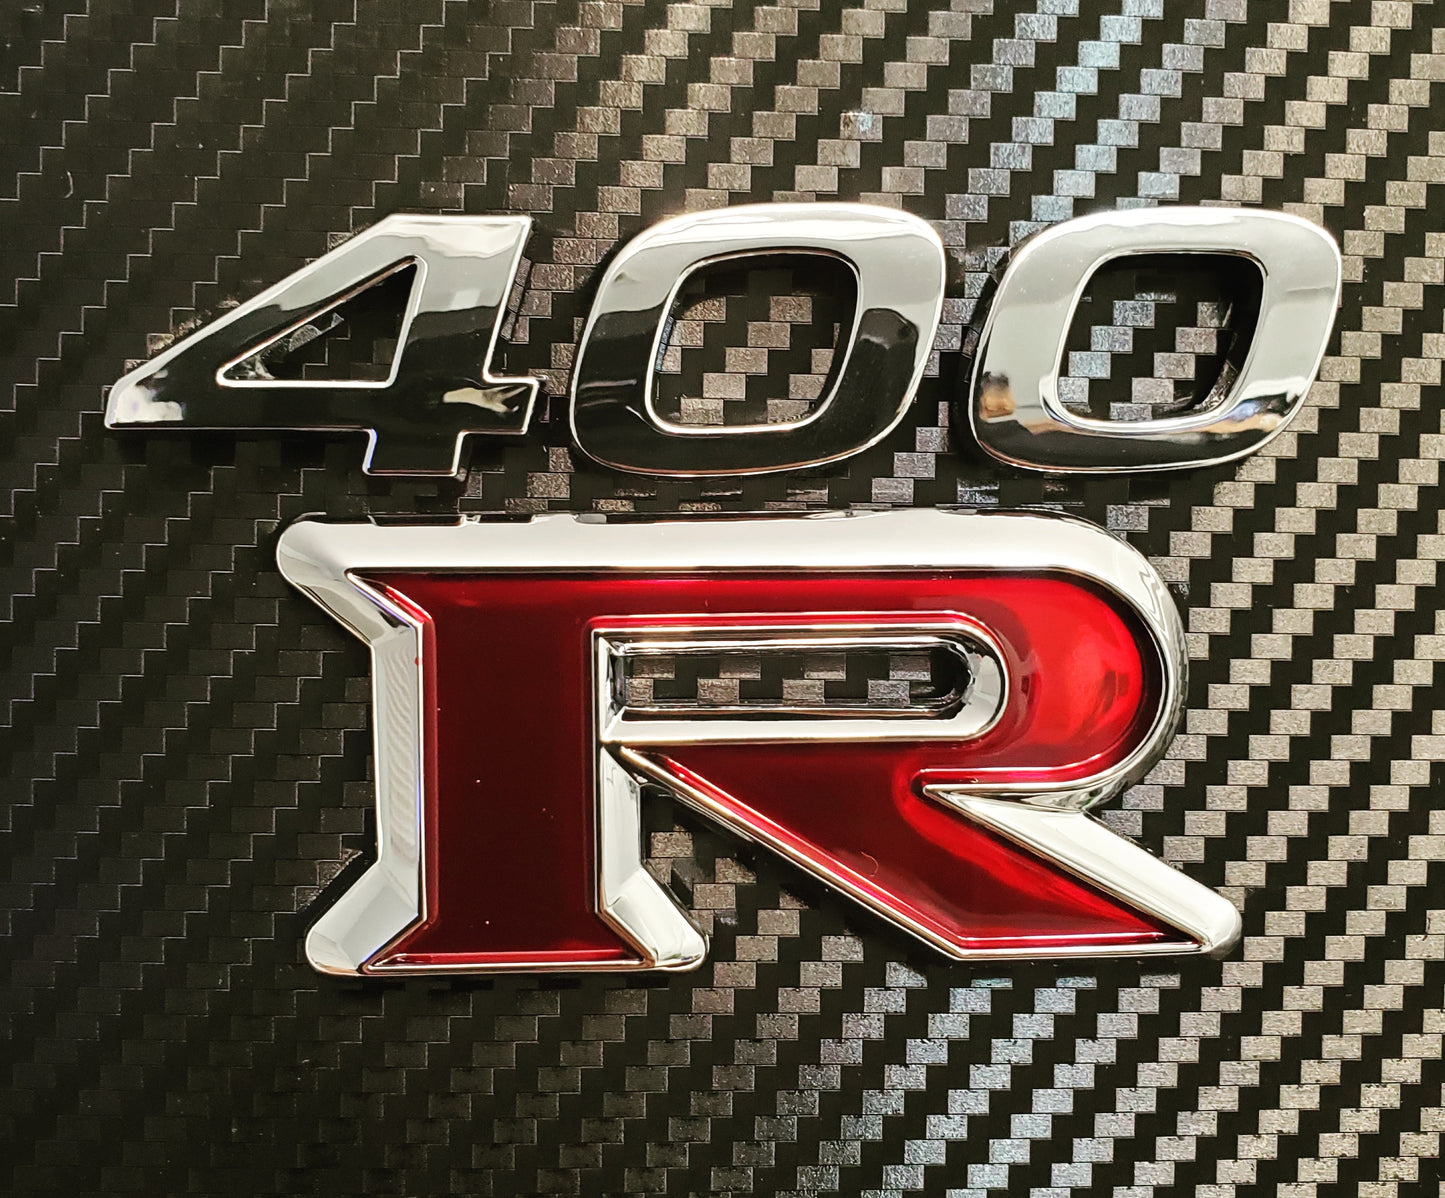 400R emblem